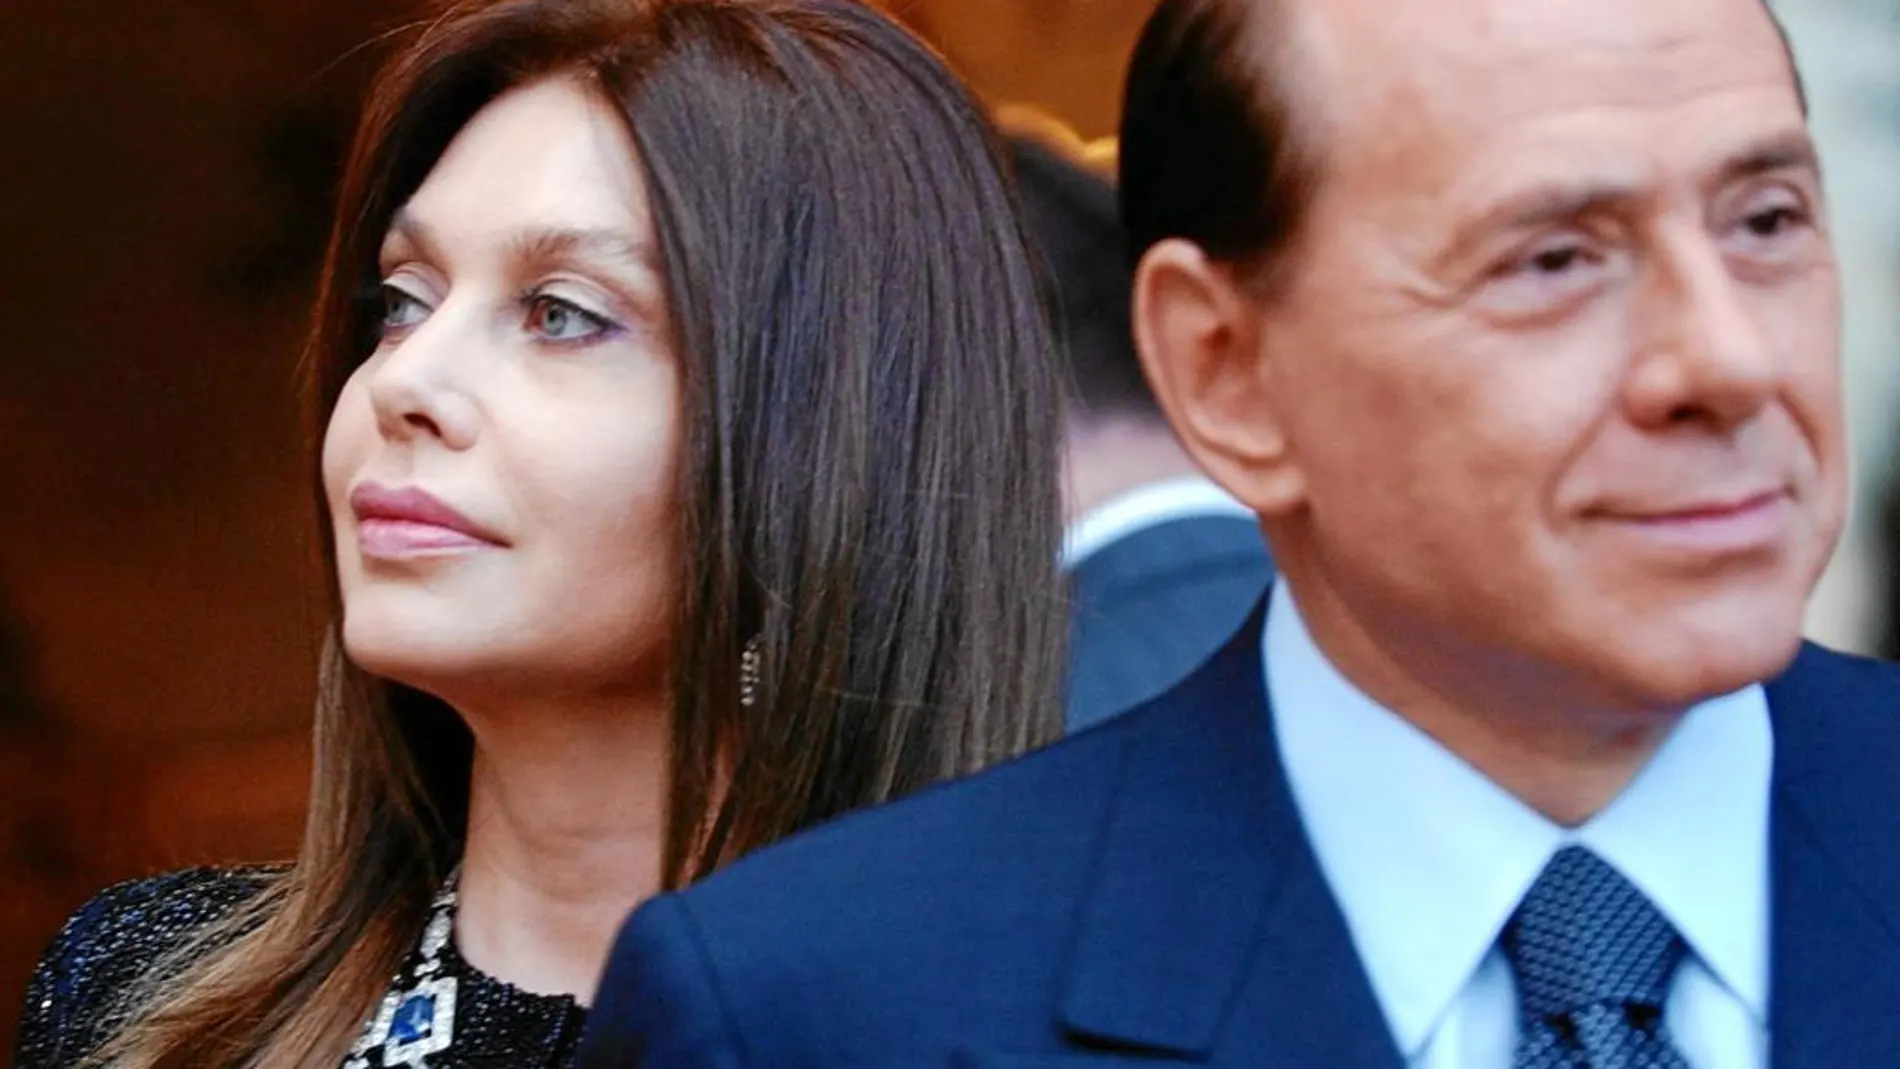 La batalla legal entre Lario y Berlusconi se remonta a 2009, cuando ella le pide el divorcio tras los escándalos sexuales en los que se vio envuelto